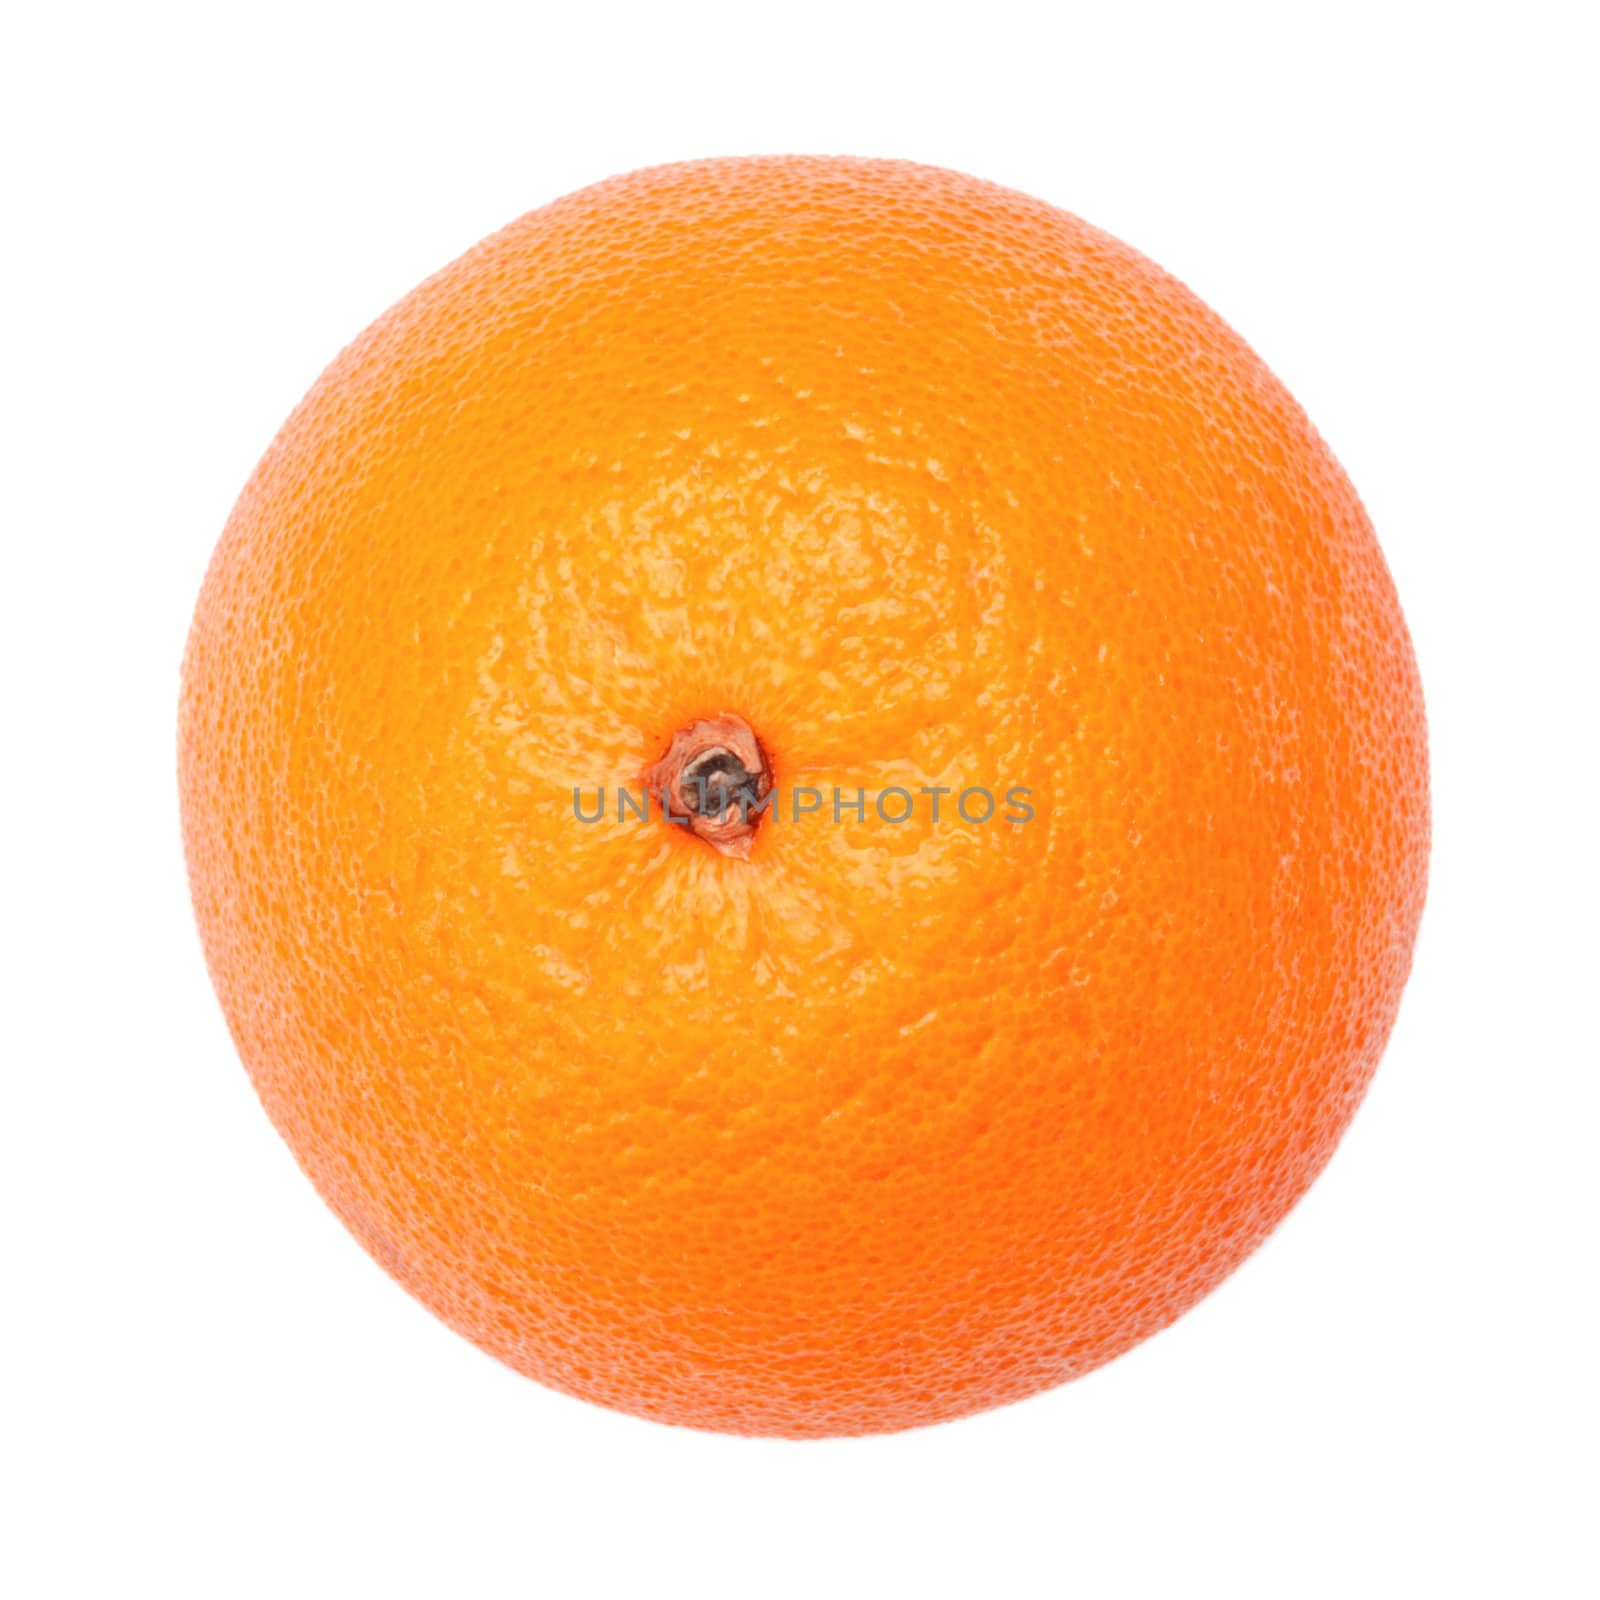 Fresh Orange by petr_malyshev